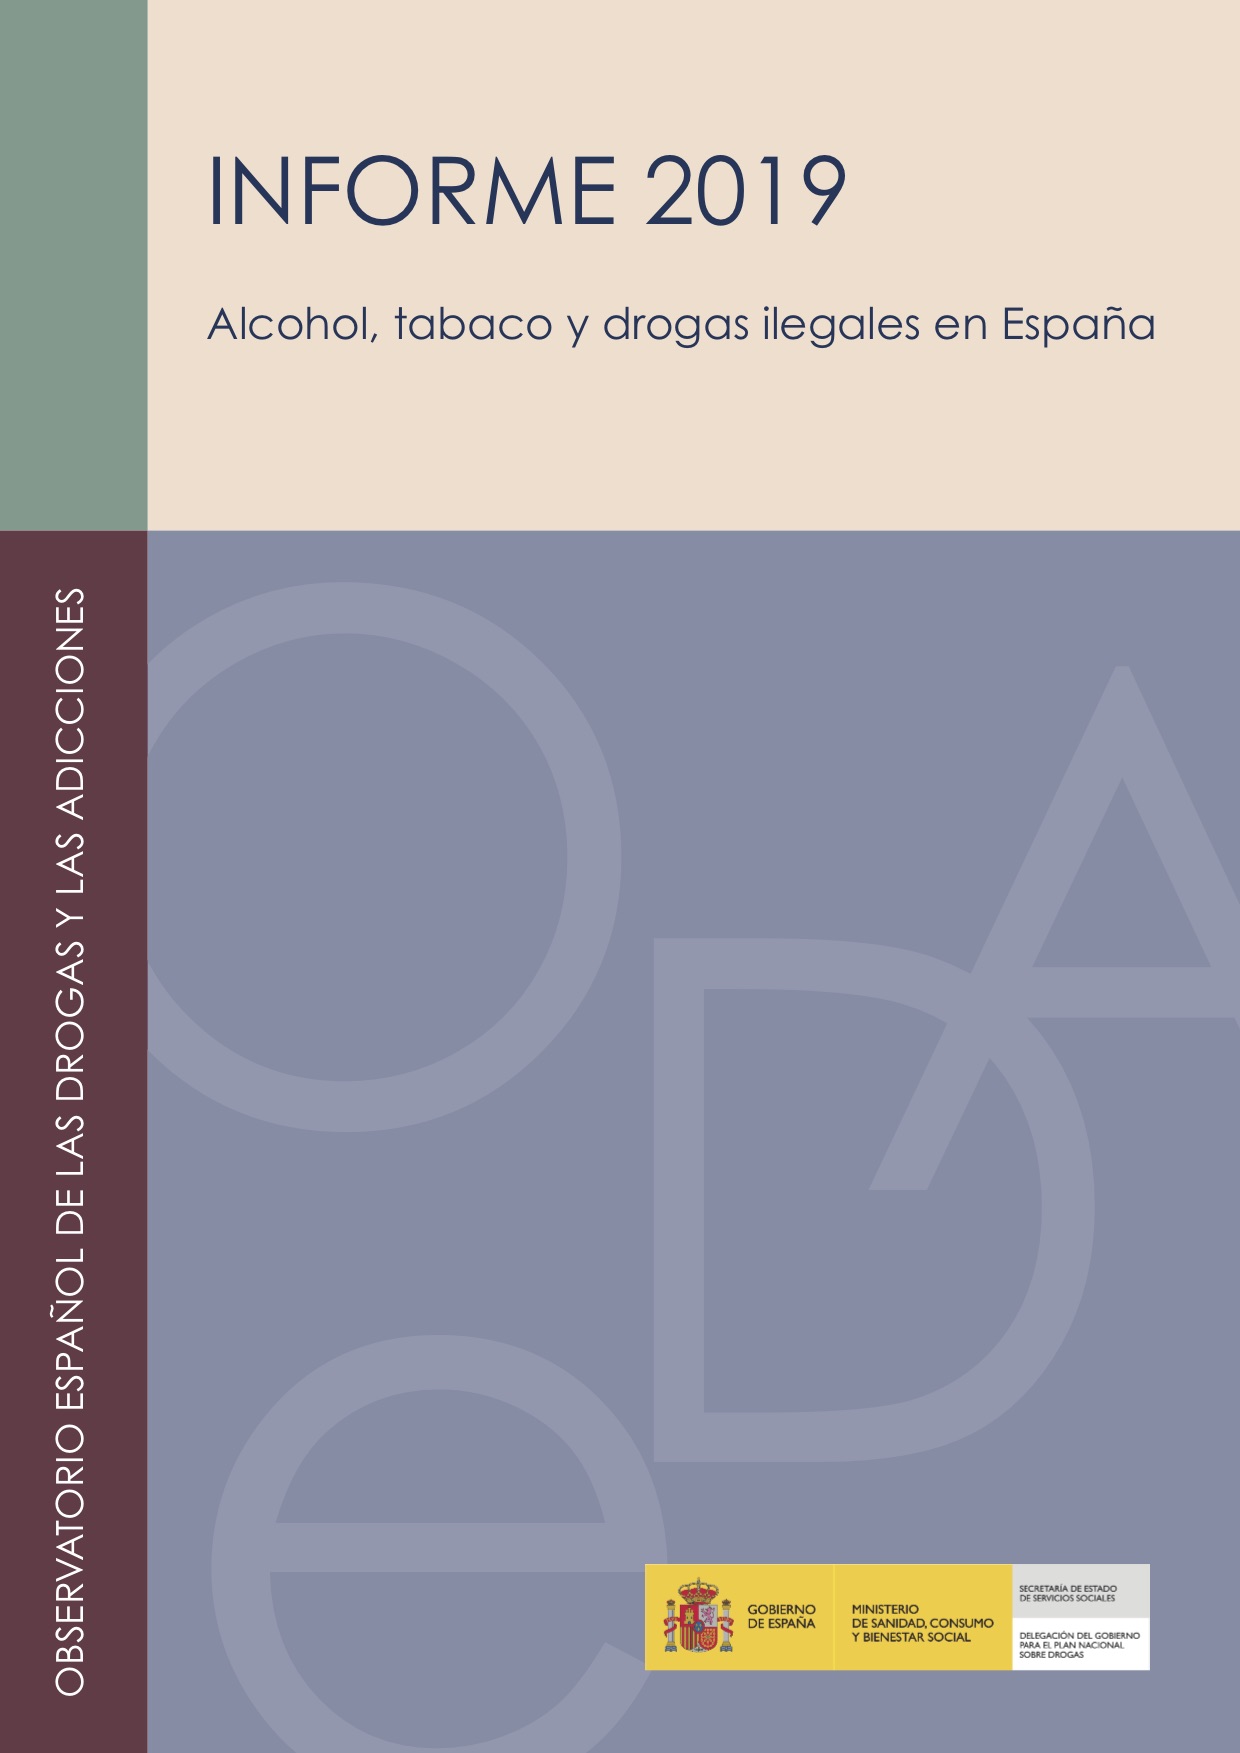 INFORME 2019 ALCOHOL TABACO Y DROGAS ILEGALES EN ESPANA